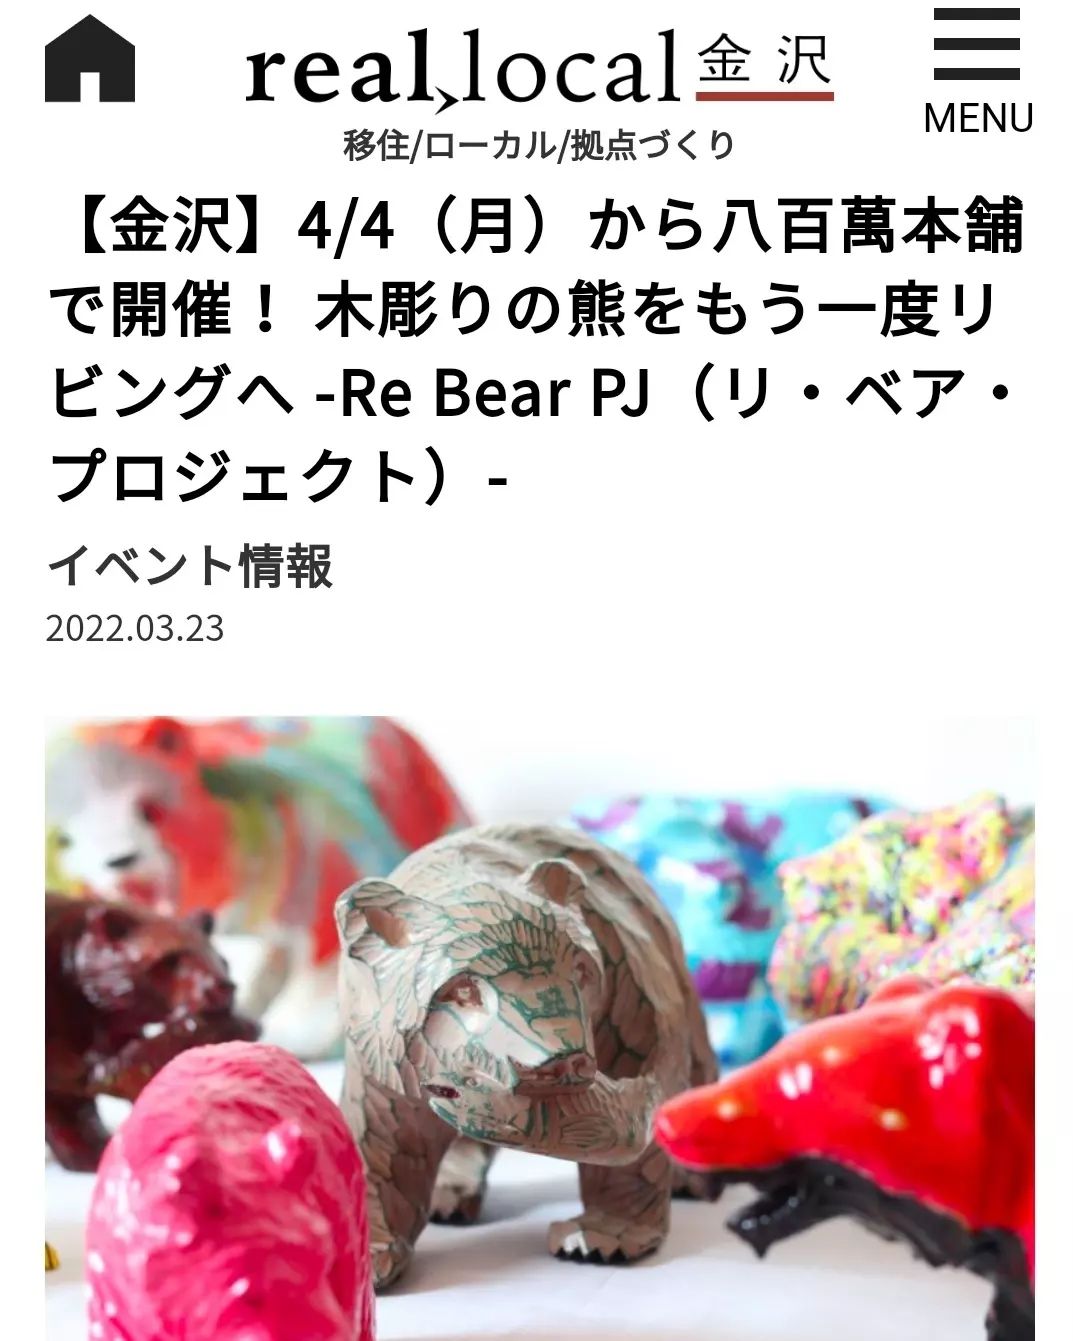 イベント|Re Bear PJ ポップアップ展示